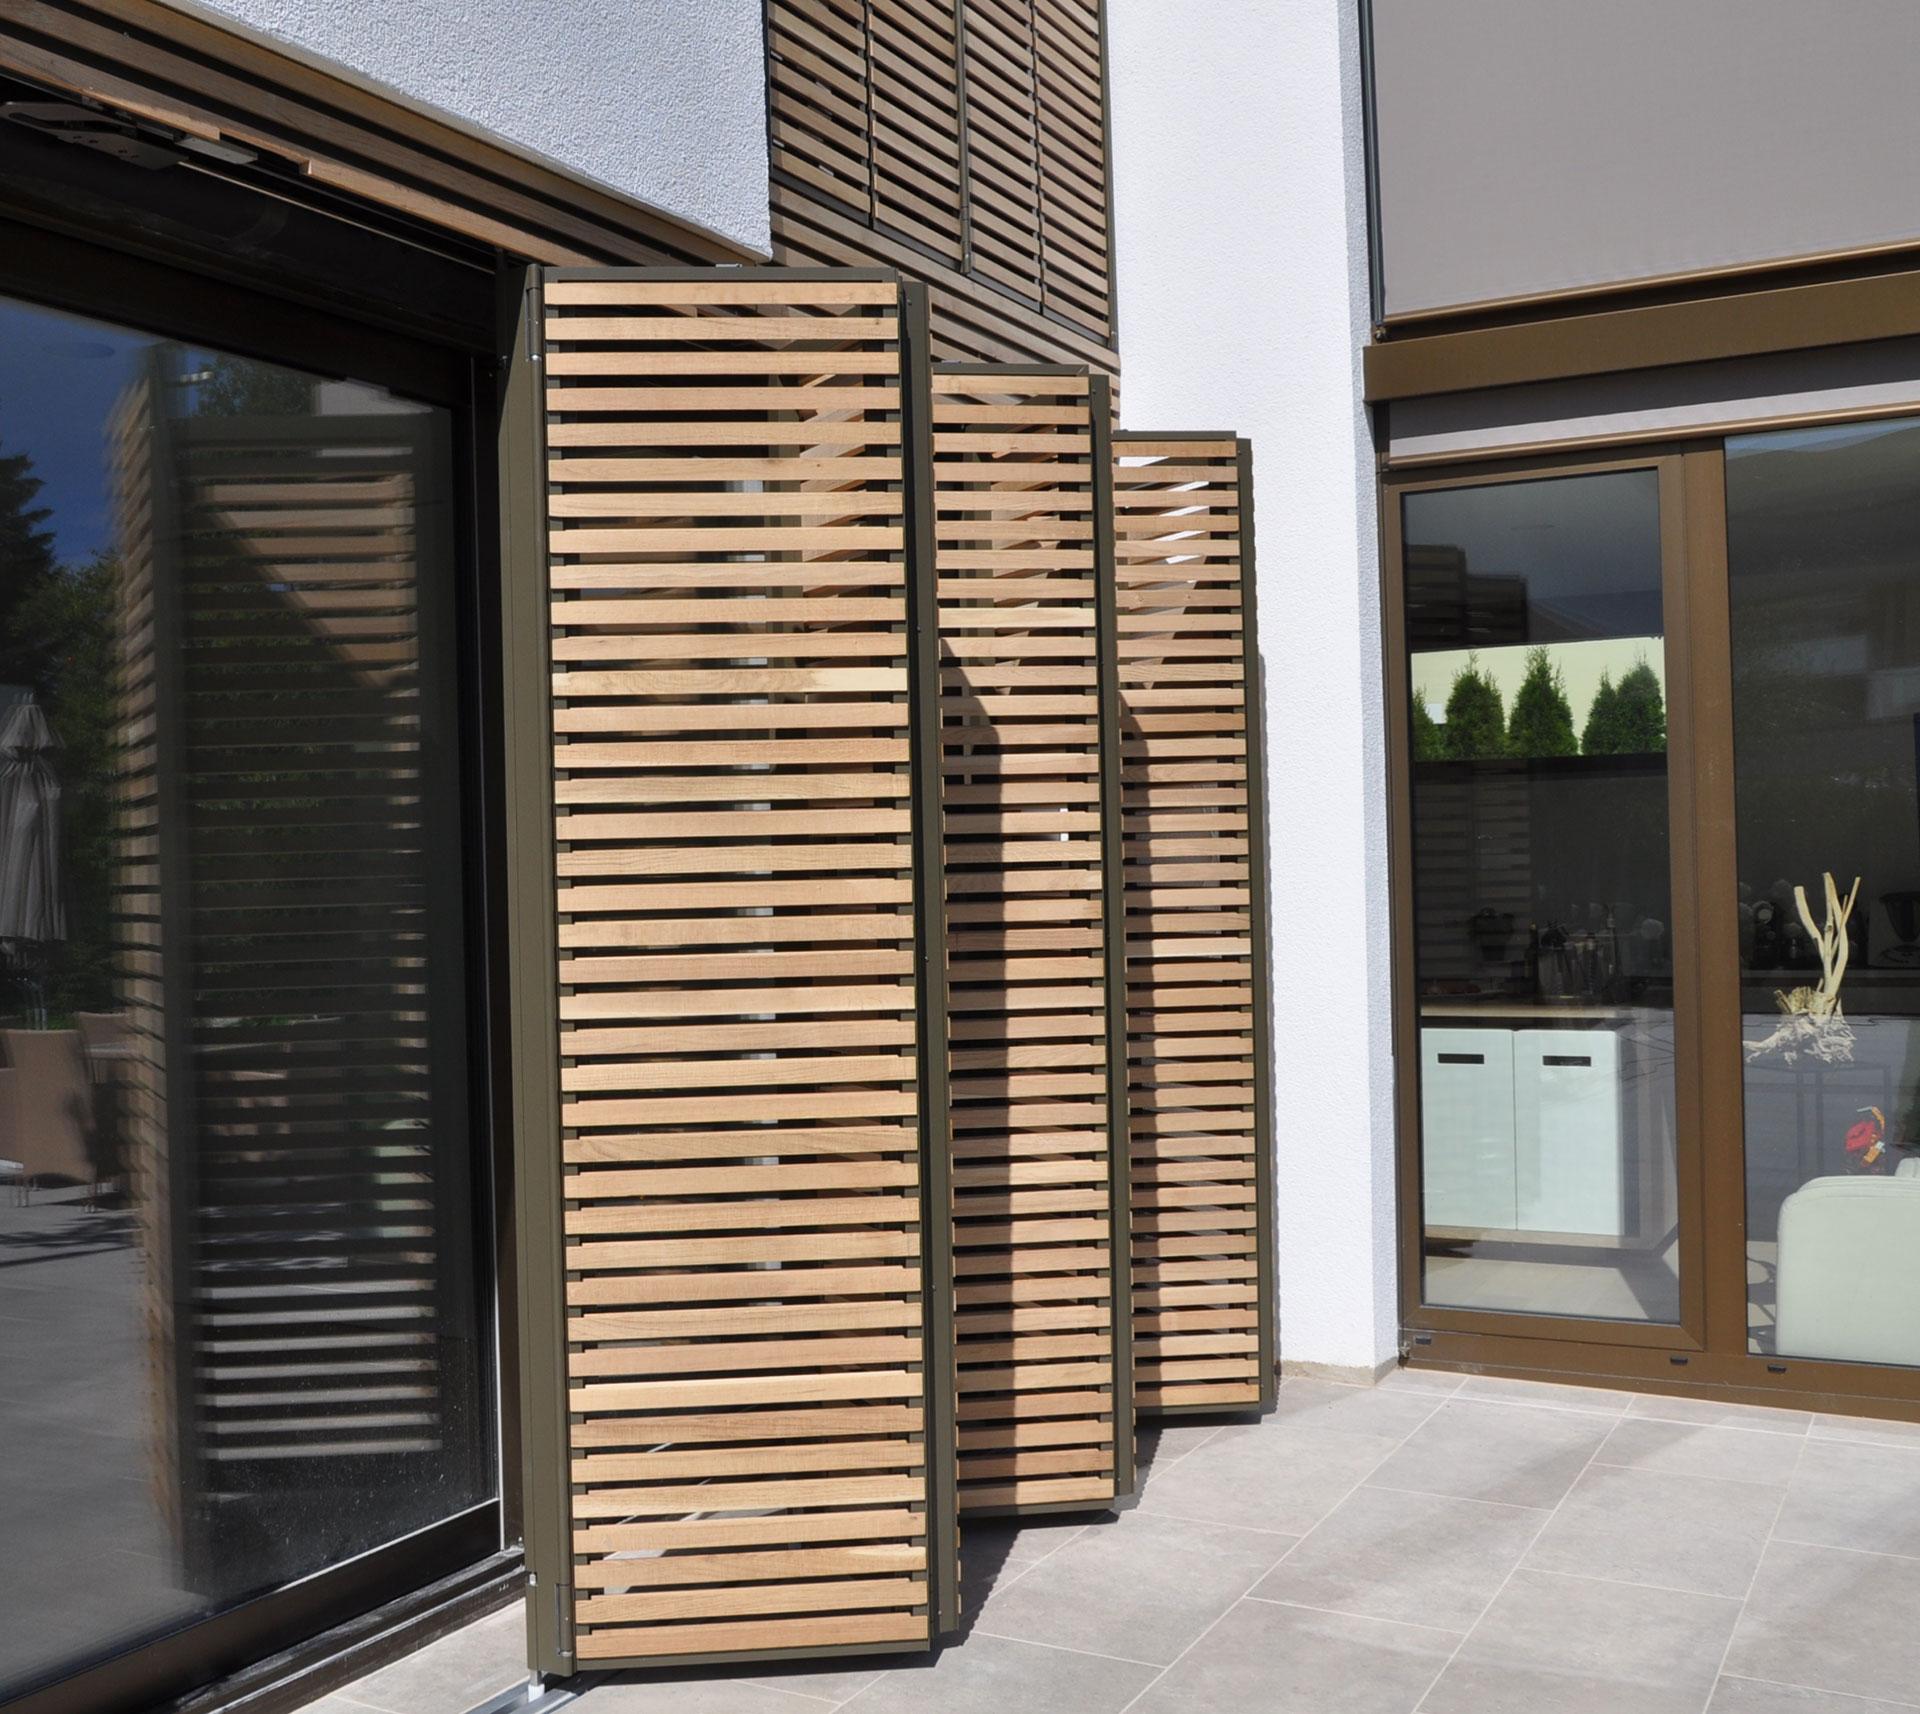 Holzschiebeläden. Der klassiche Sonnenschutz für Fenster.